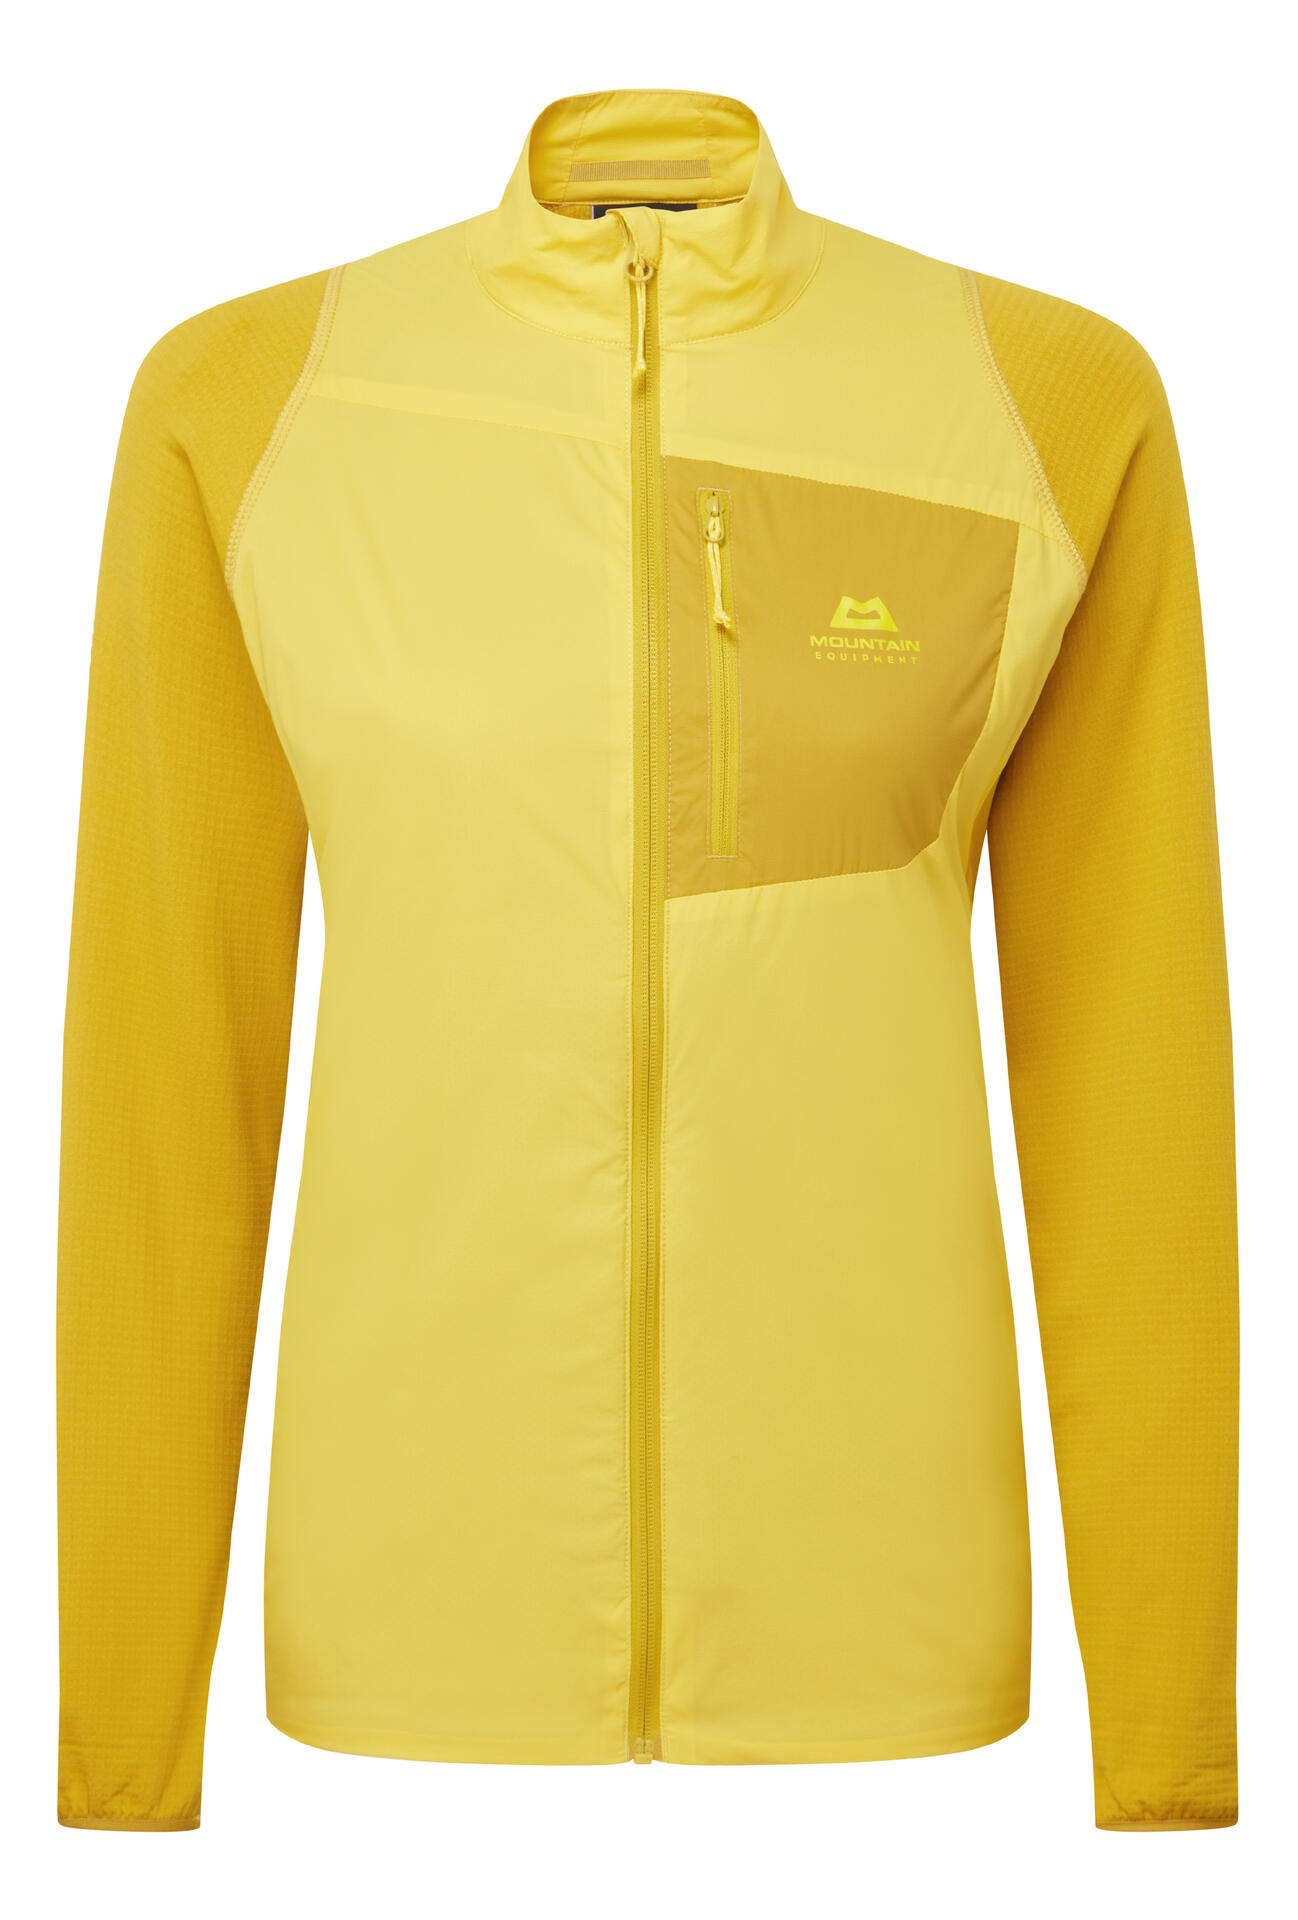 Mountain Equipment Switch Jacket Women'S Barva: Lemon/Acid, Velikost: M